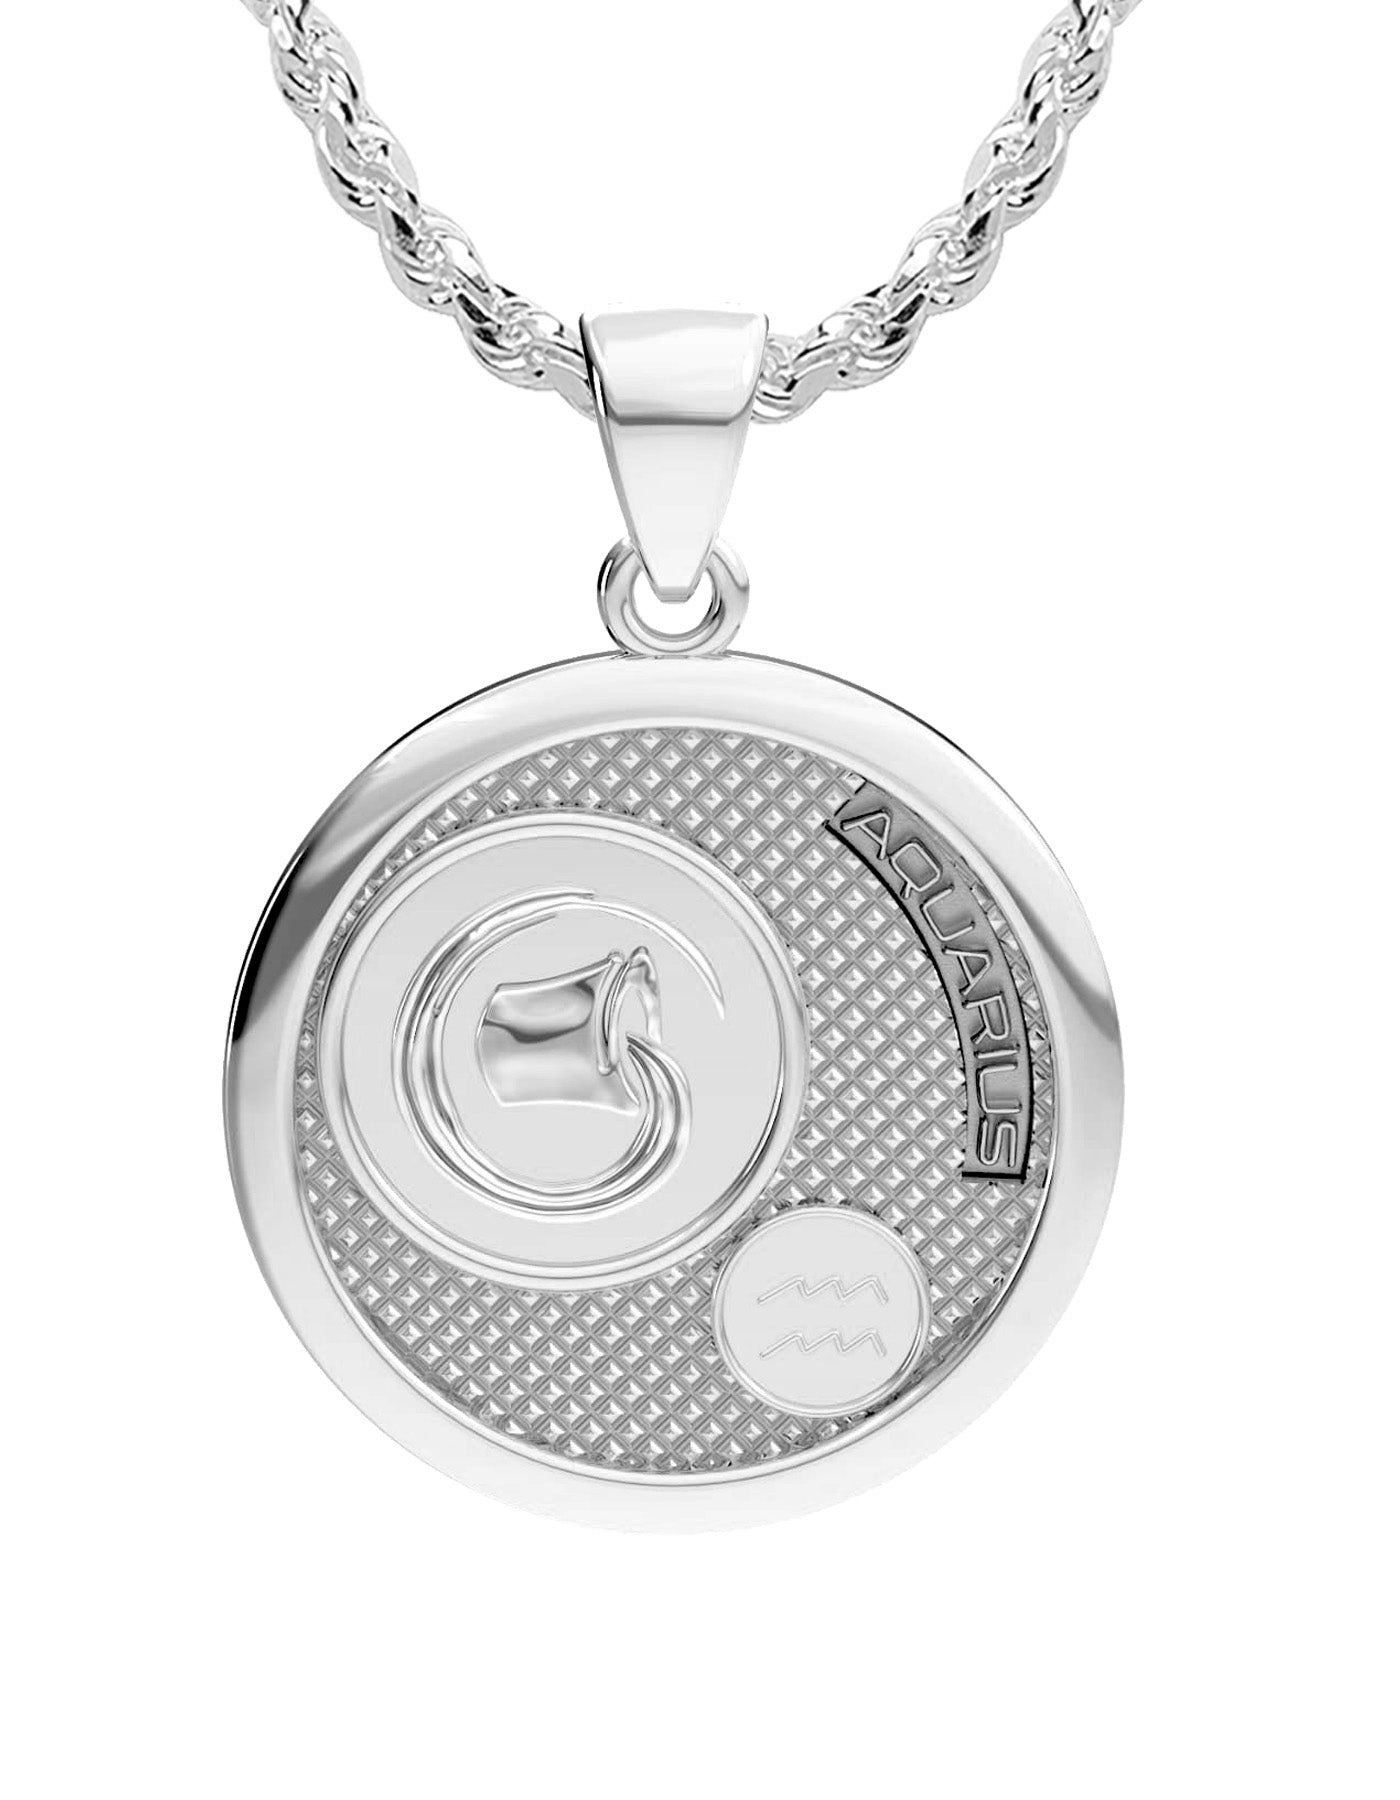 Aquarius Women's Necklace Zodiac Pendant Silver Chain – Lulugem.com